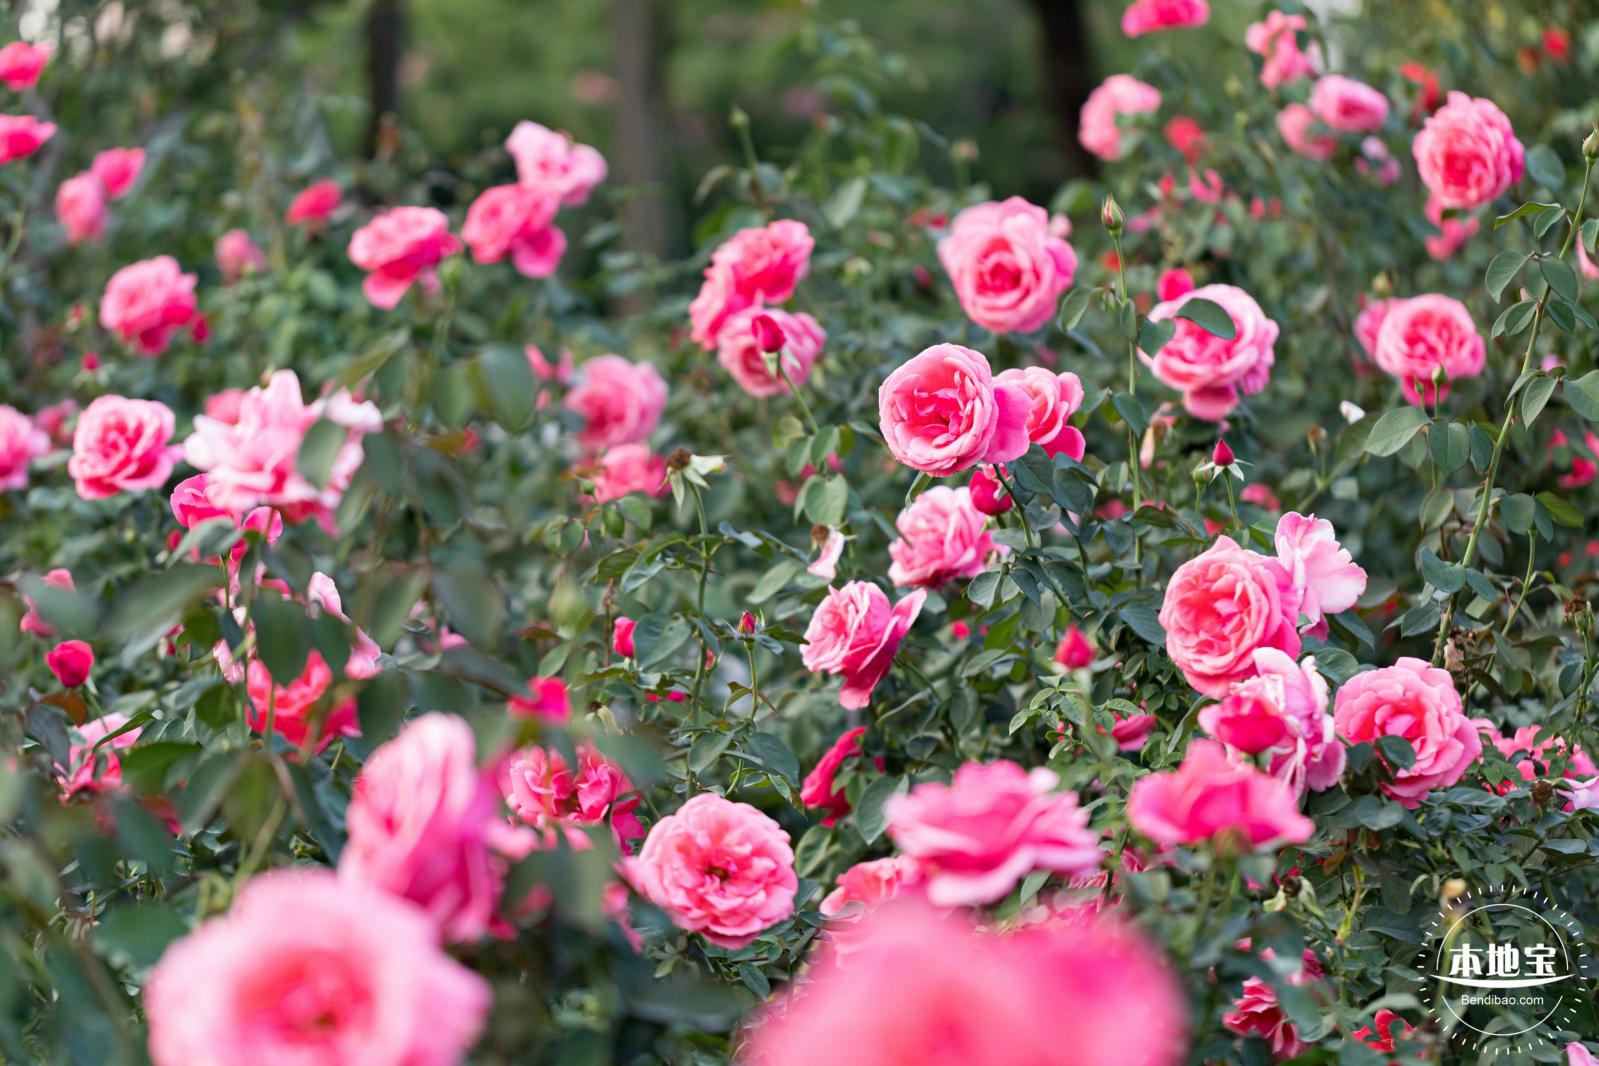 加拿大皇家植物园玫瑰花园向公众开放